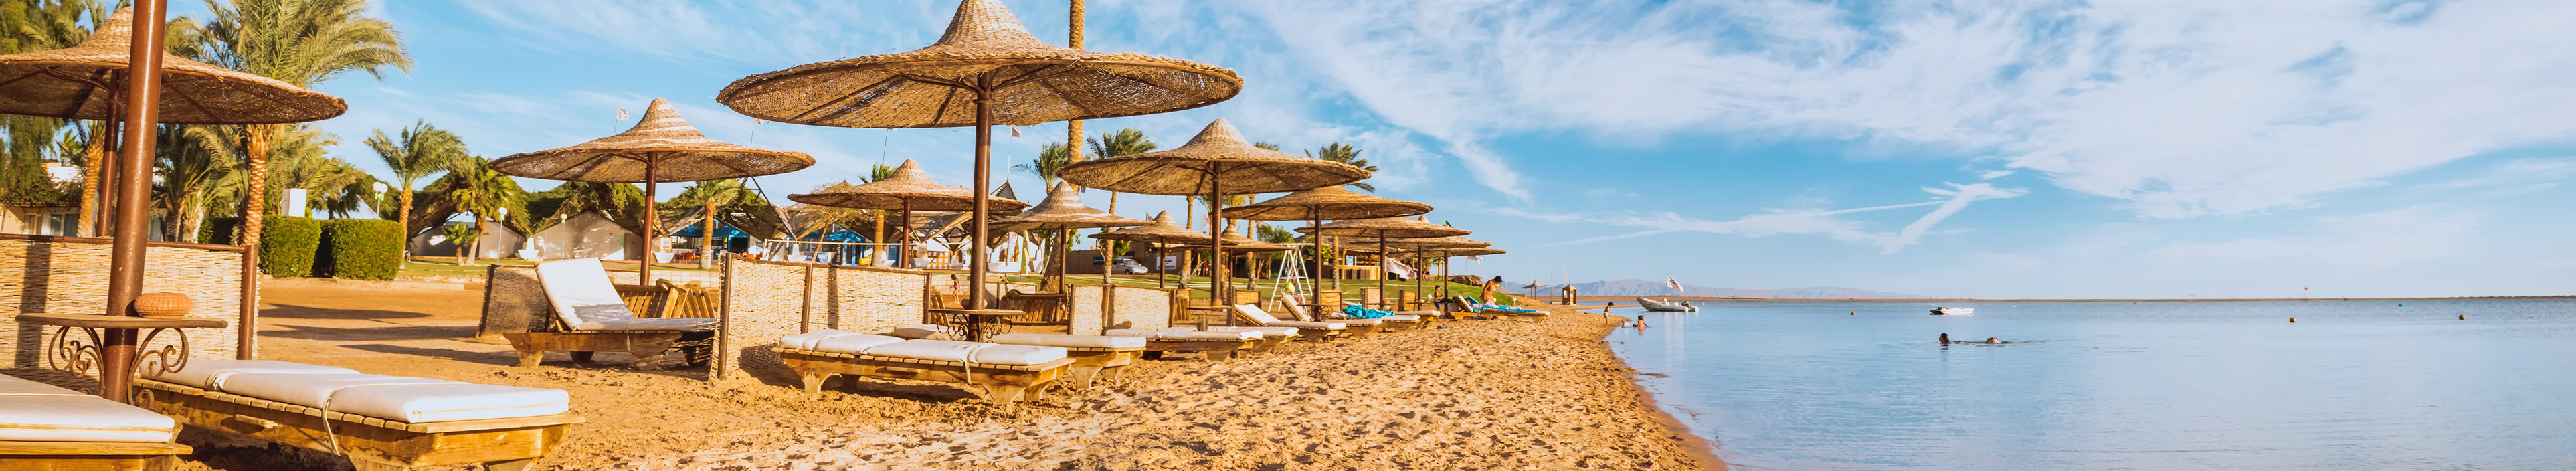 Ägypten Urlaub. Liegen mit Sonnenschirme am Strand